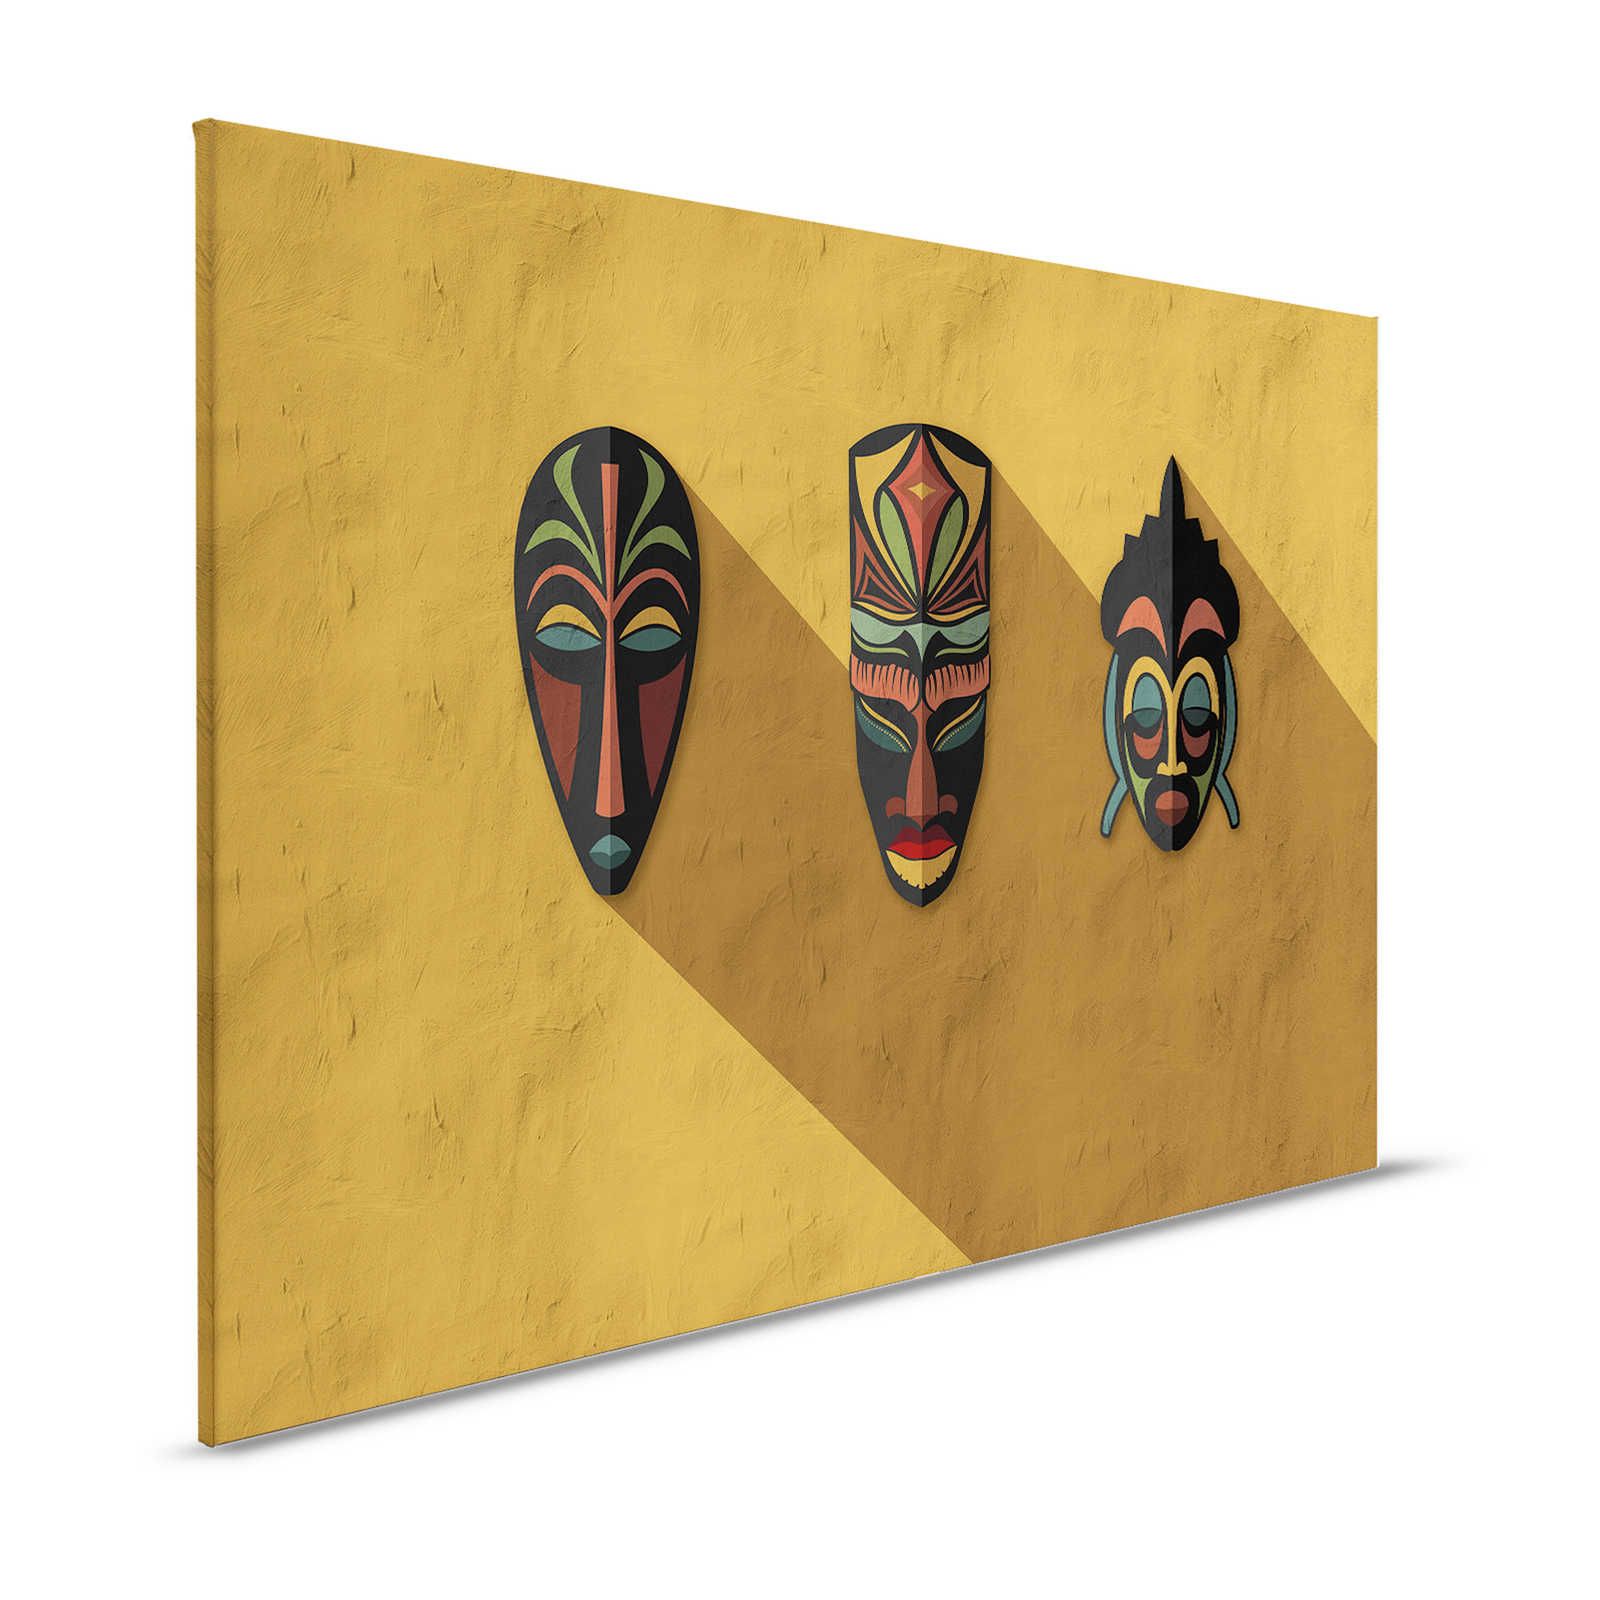 Zulu 1 - Quadro su tela giallo senape, Africa Masks Zulu Design - 1,20 m x 0,80 m
